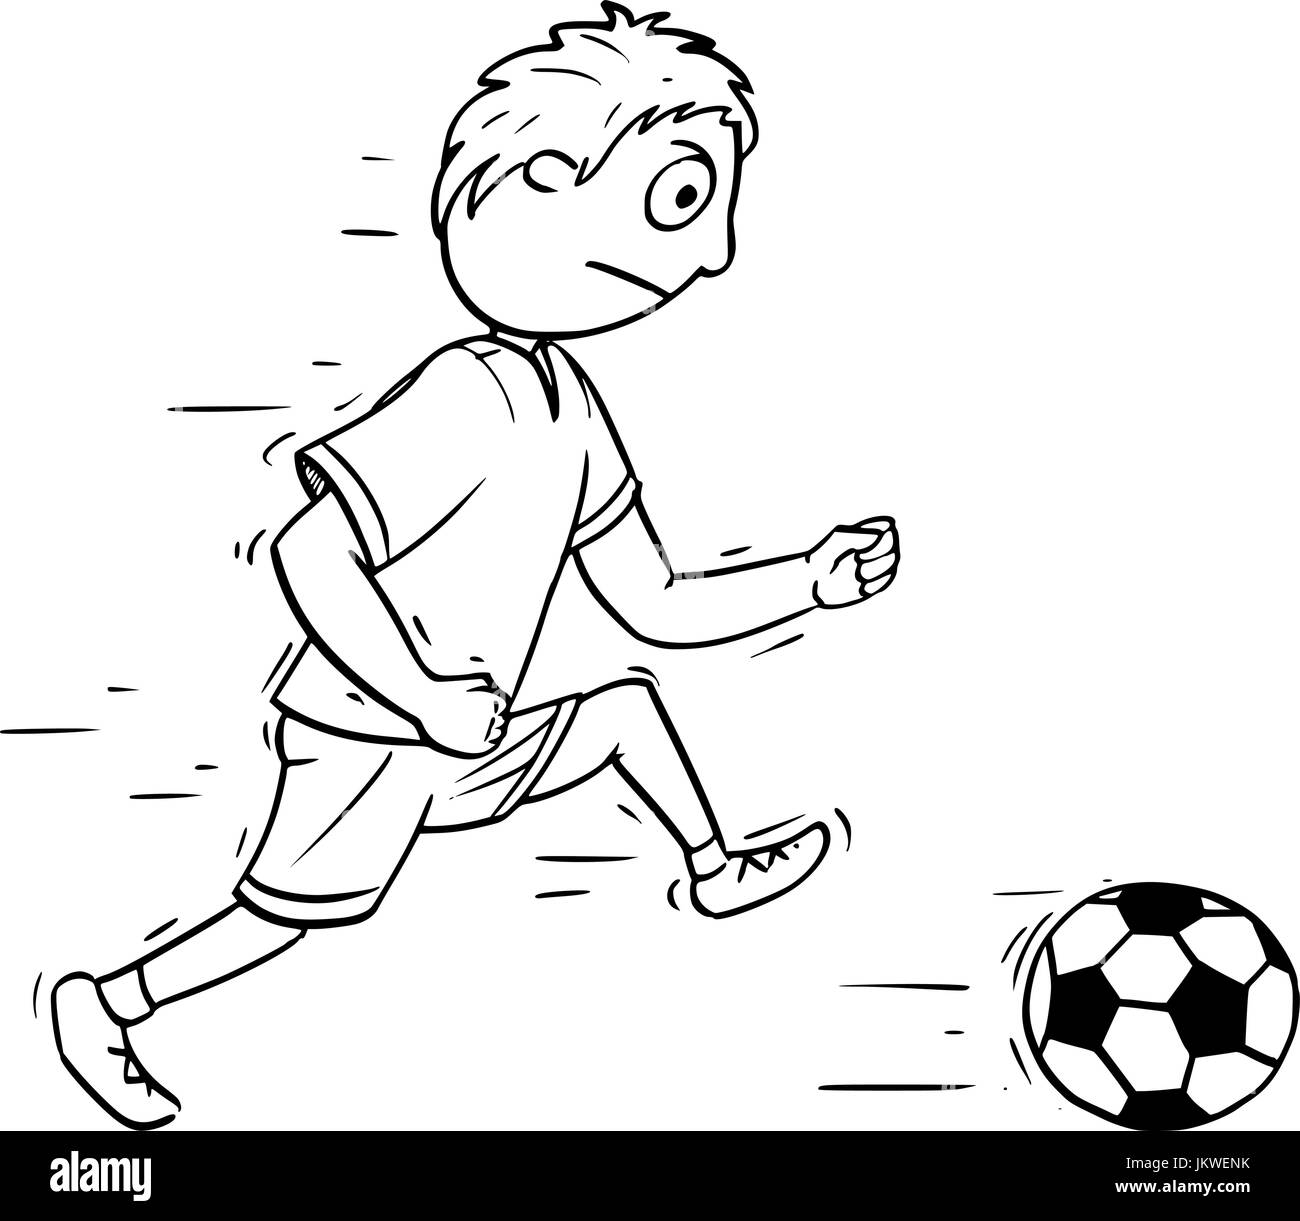 Juego de fútbol para niños. niños jugando al fútbol en el campo de deportes  de la escuela. ilustración vectorial de dibujos animados.